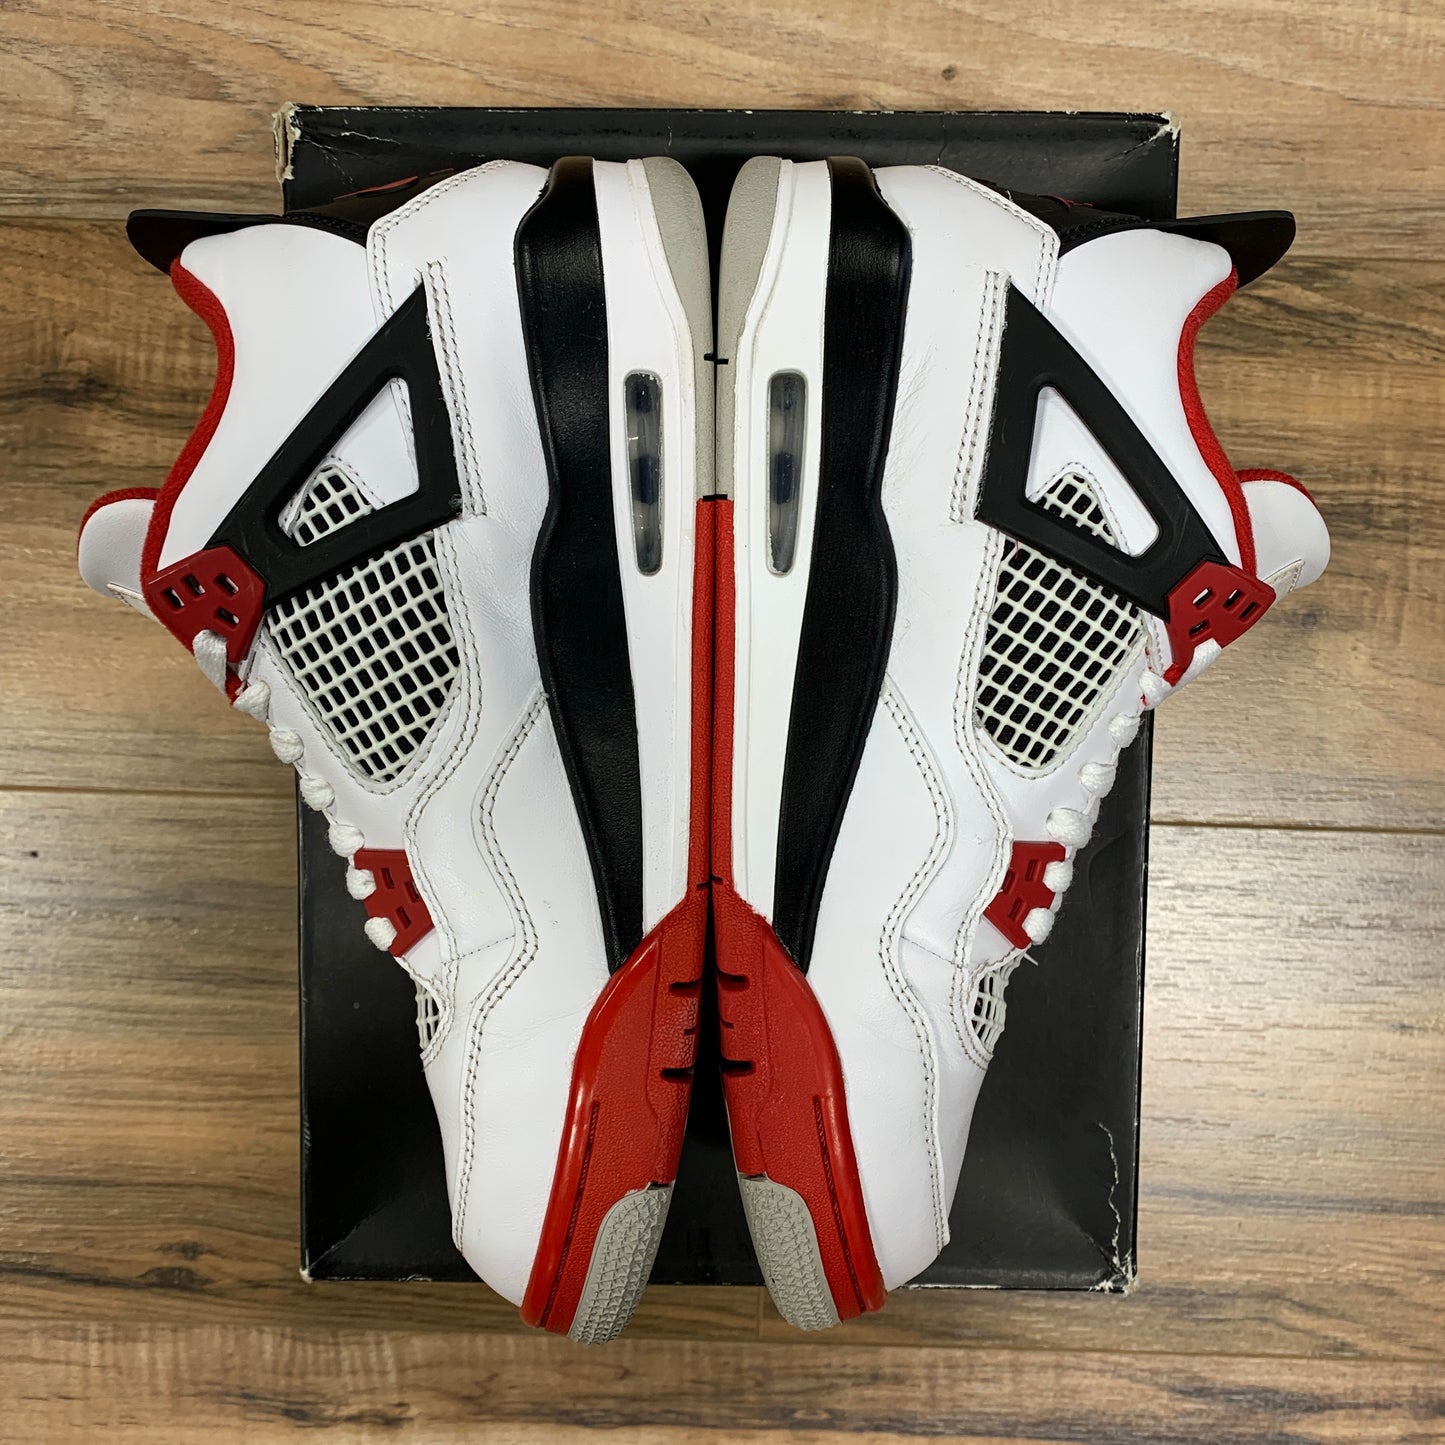 Jordan 4 'Fire Red' Size 6.5Y